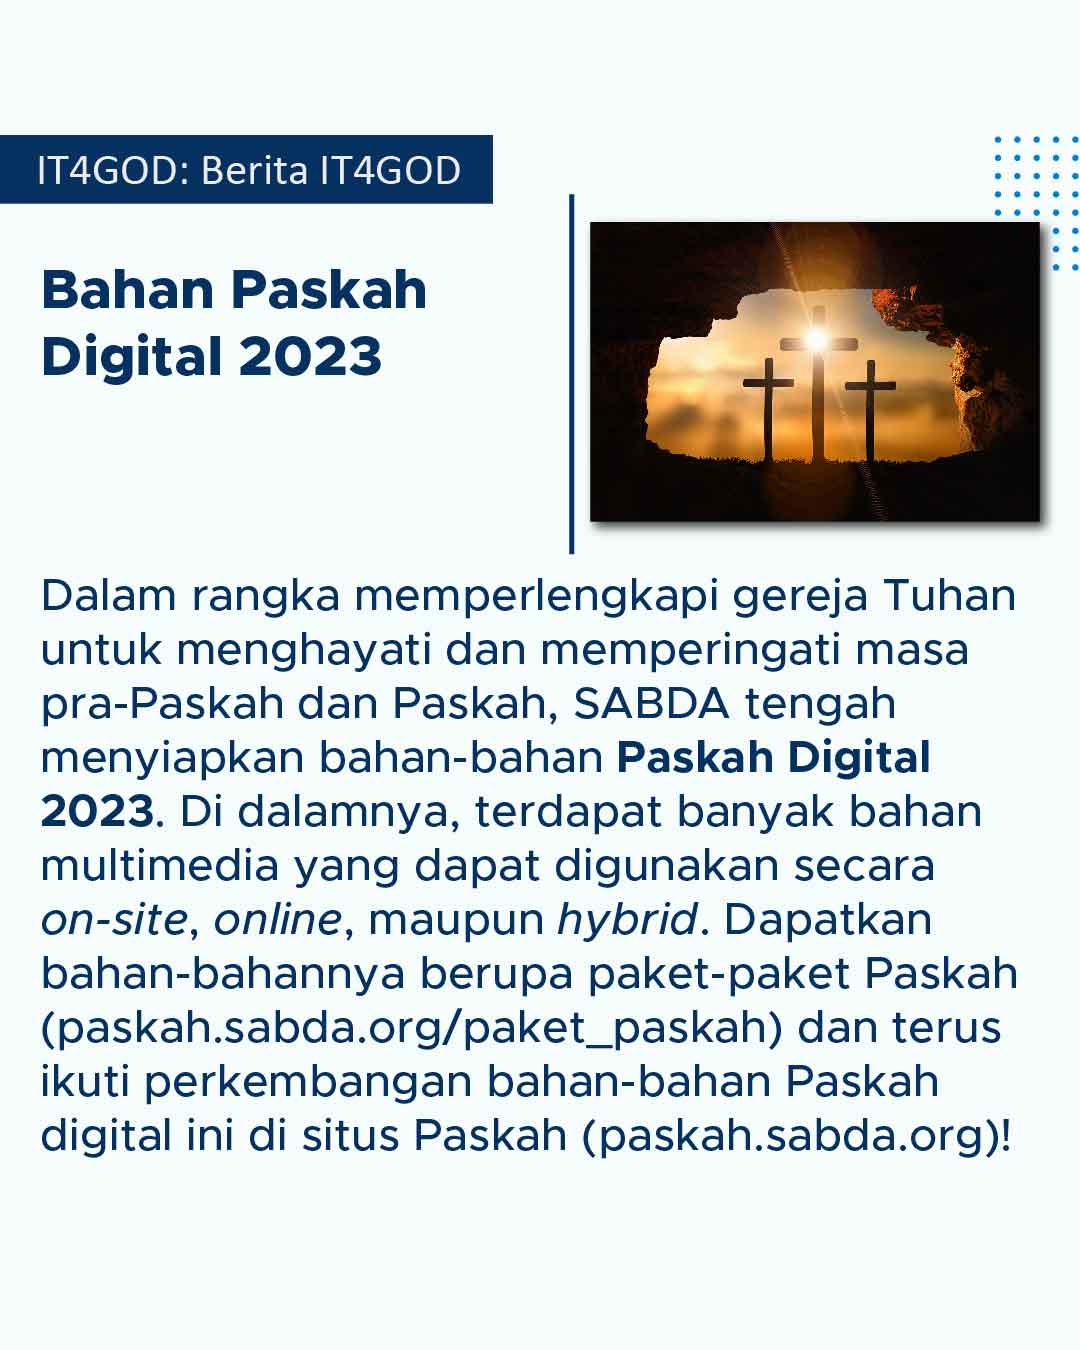 Persiapan bahan-bahan Paskah Digital 2023 dari YLSA.